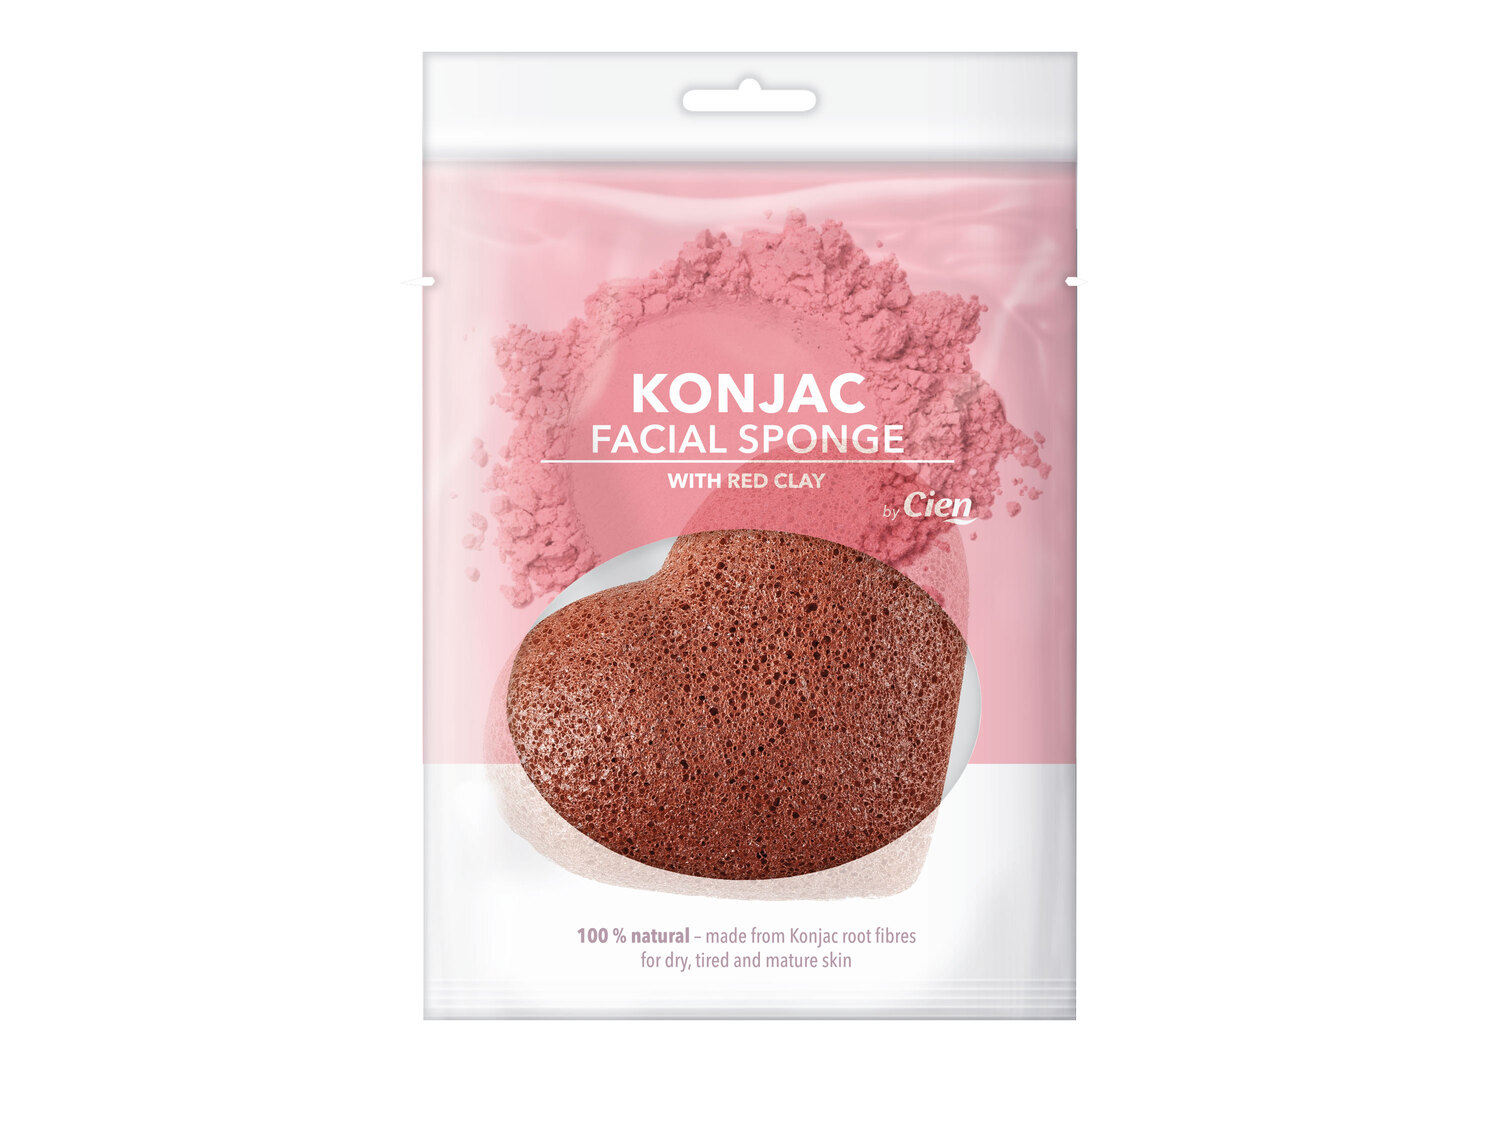 Éponge Konjac , le prix 1.99 €  
-  Exfolie et nettoie tout en douceur le visage.